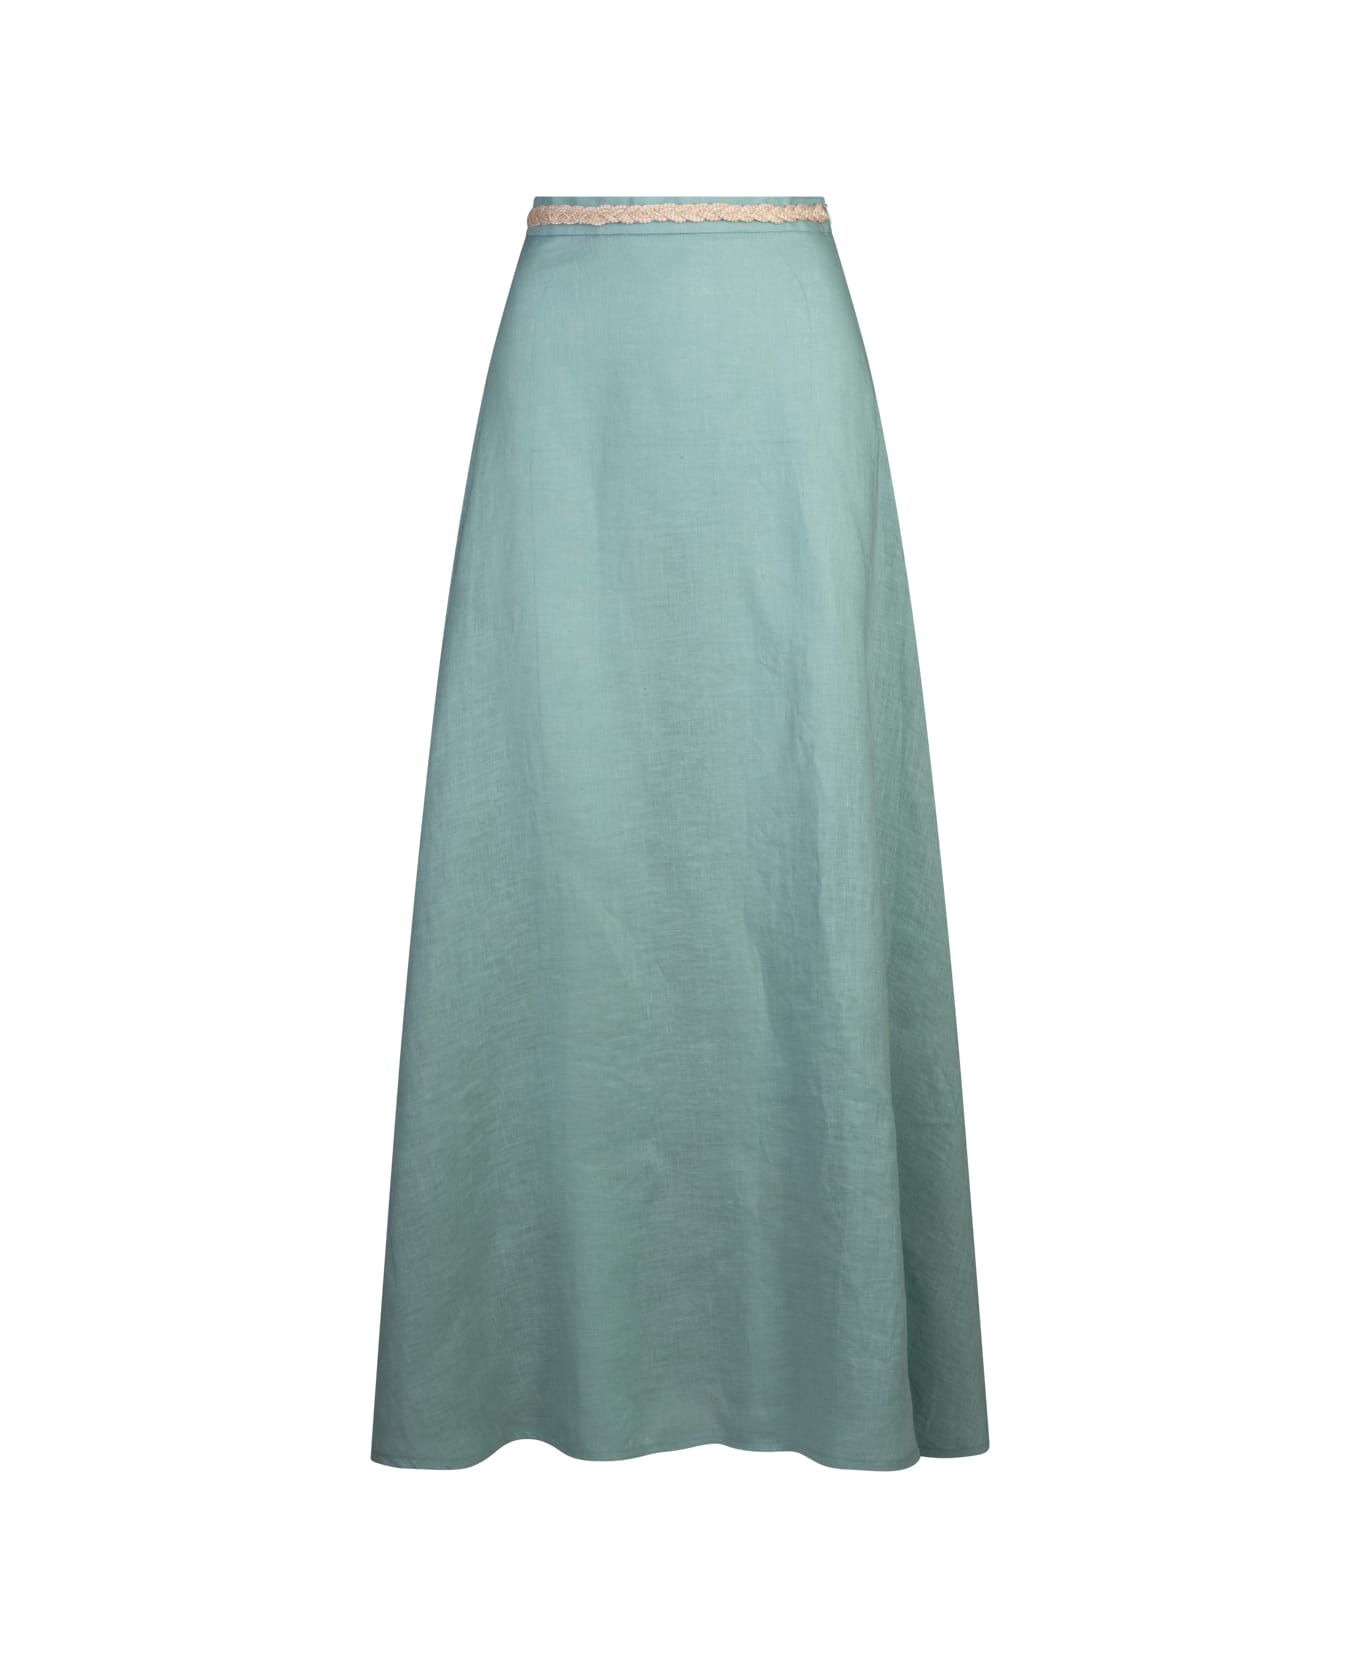 Amotea Charline Long Skirt In Light Blue Linen - Blue